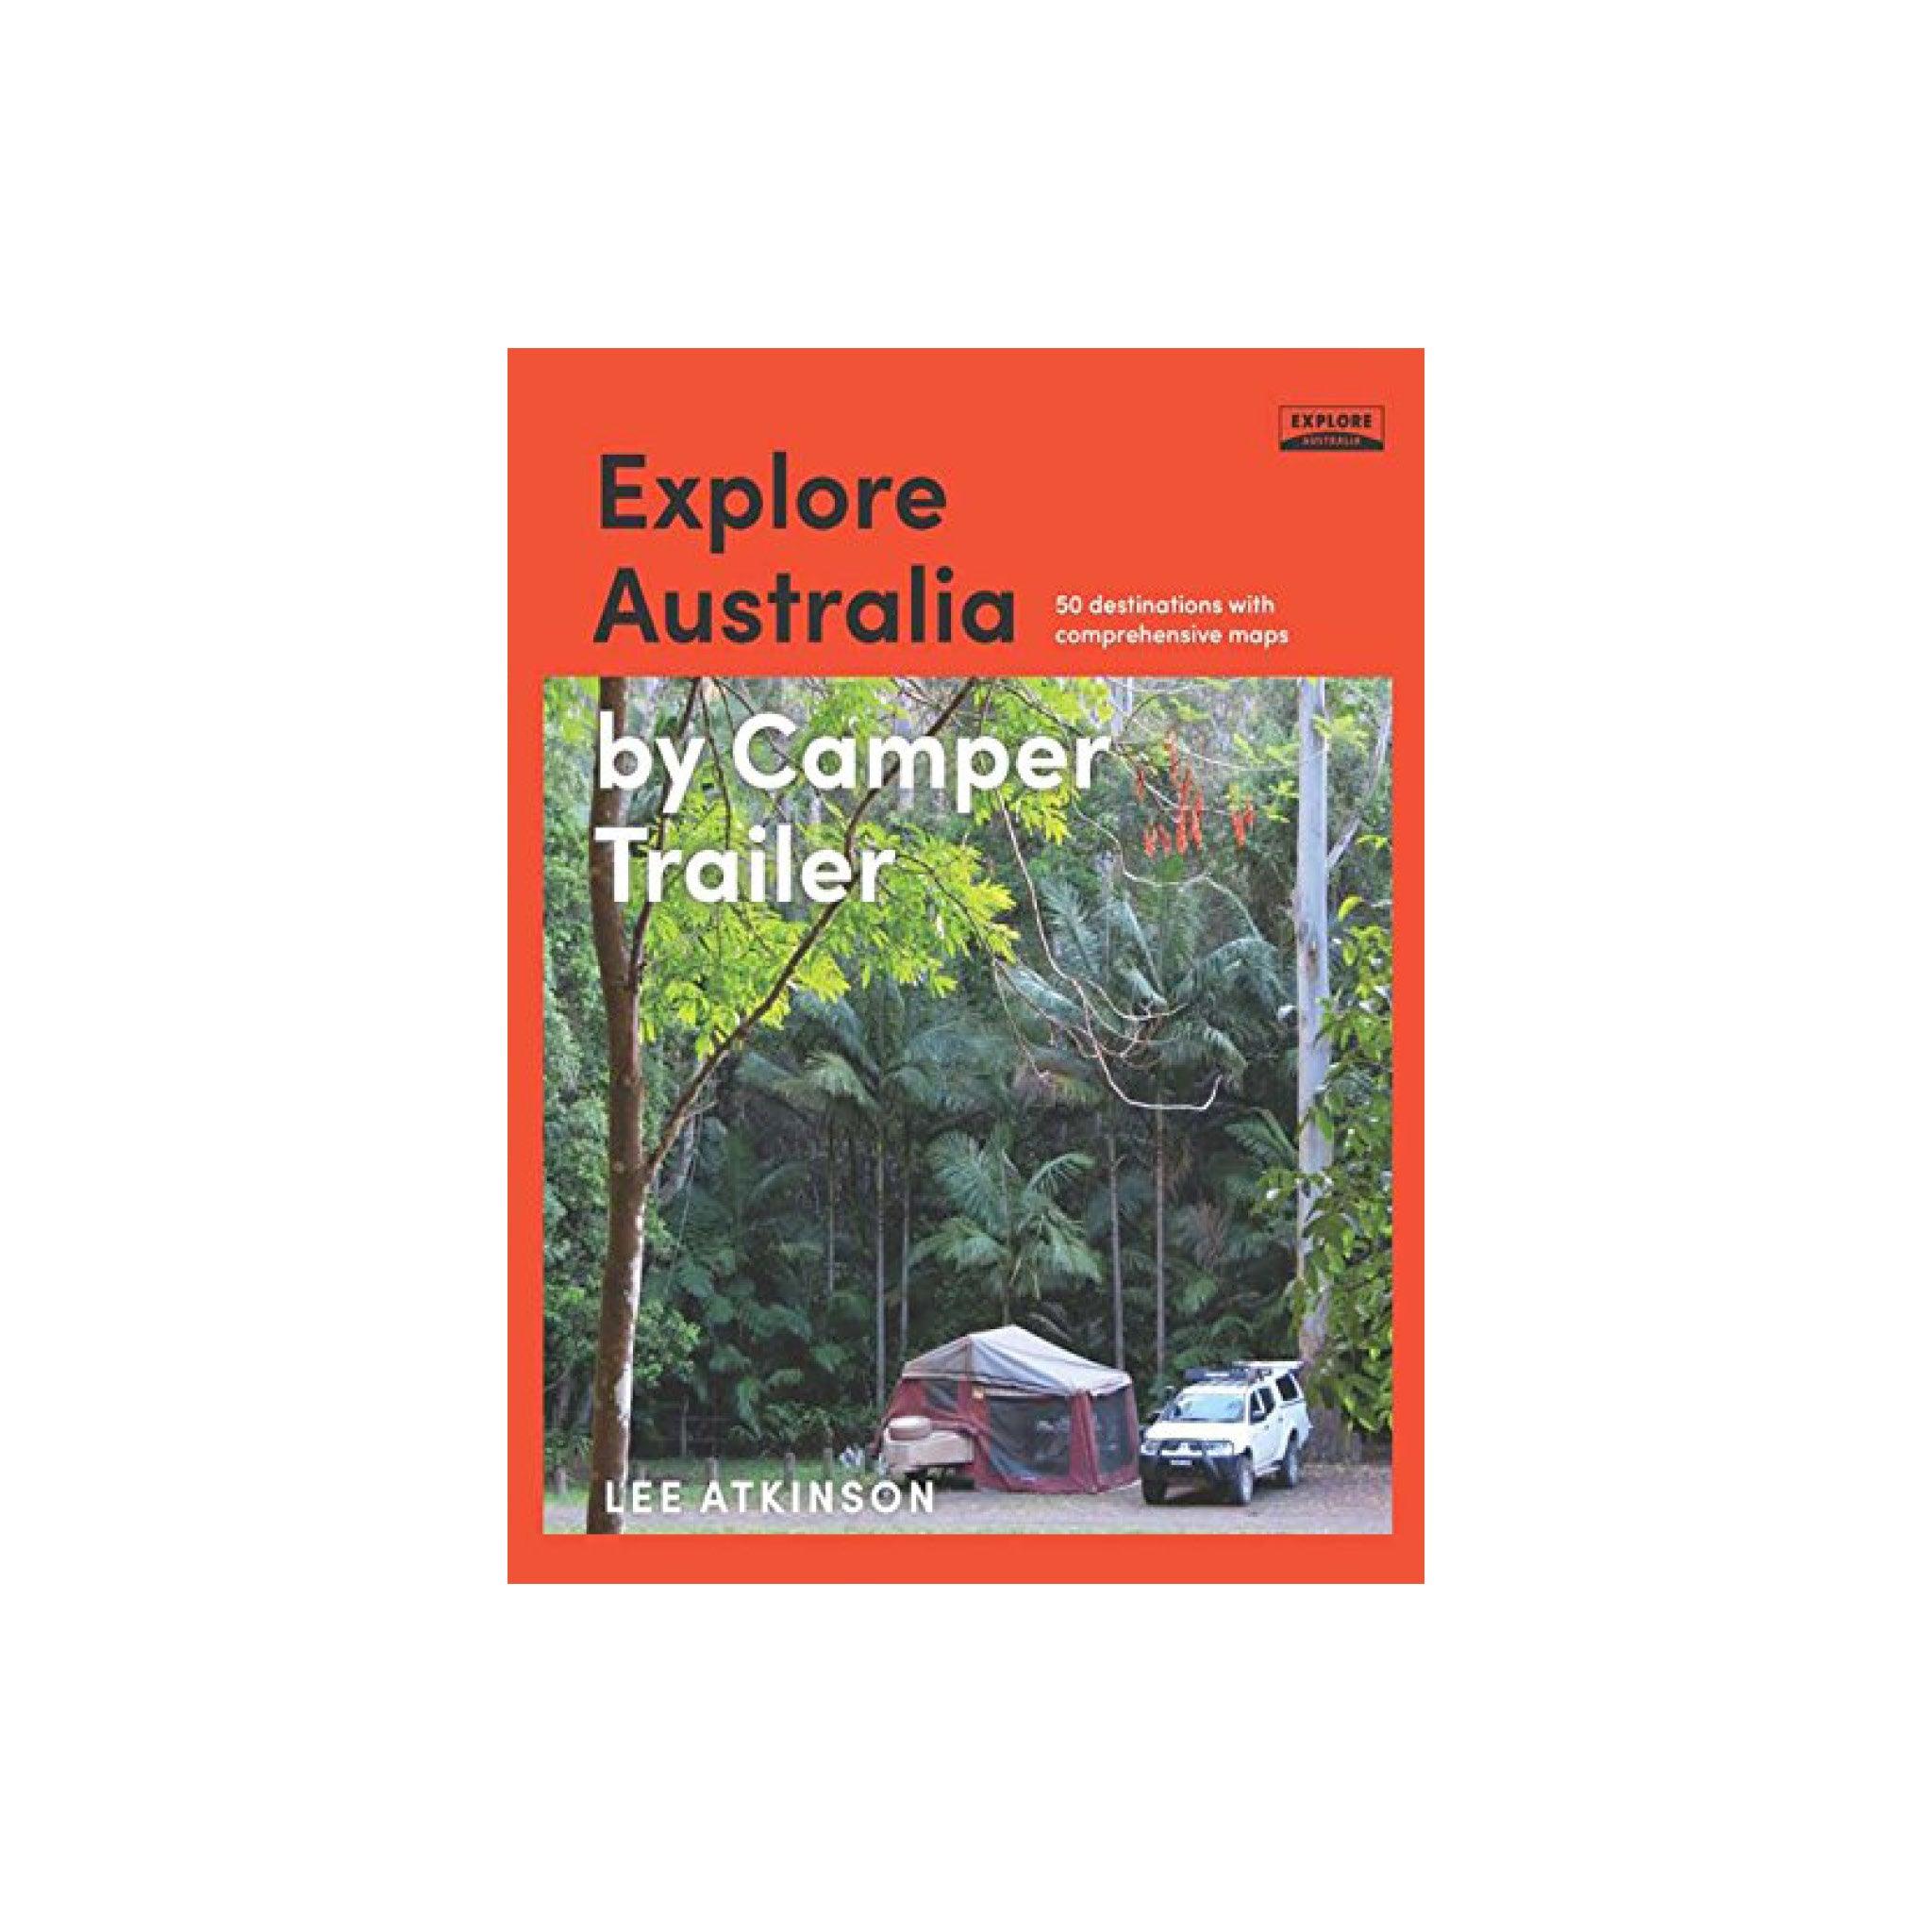 Explore Australia by Camper Trailer - Aussie Traveller